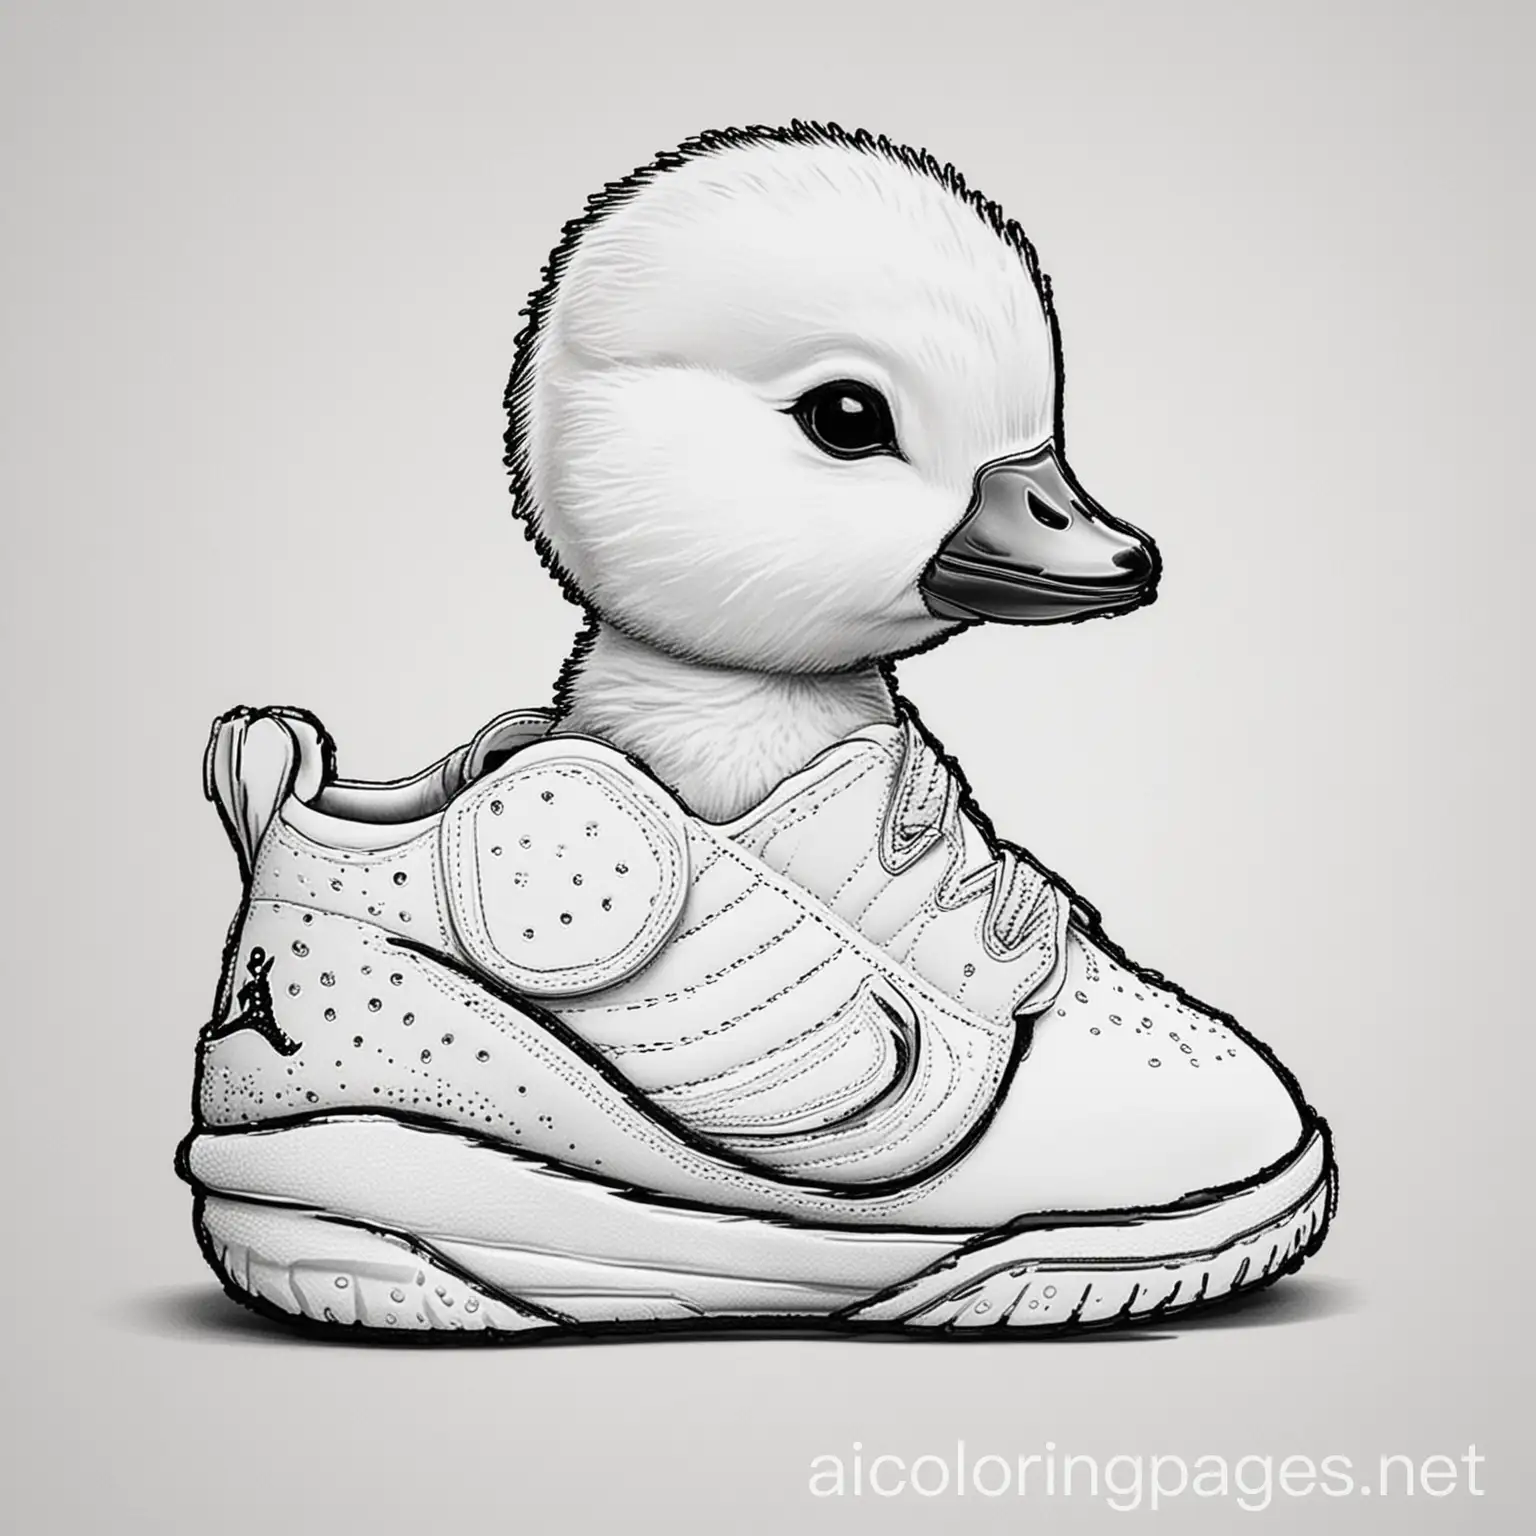 Baby-Goose-Wearing-Nike-Air-Jordan-Shoes-Coloring-Page